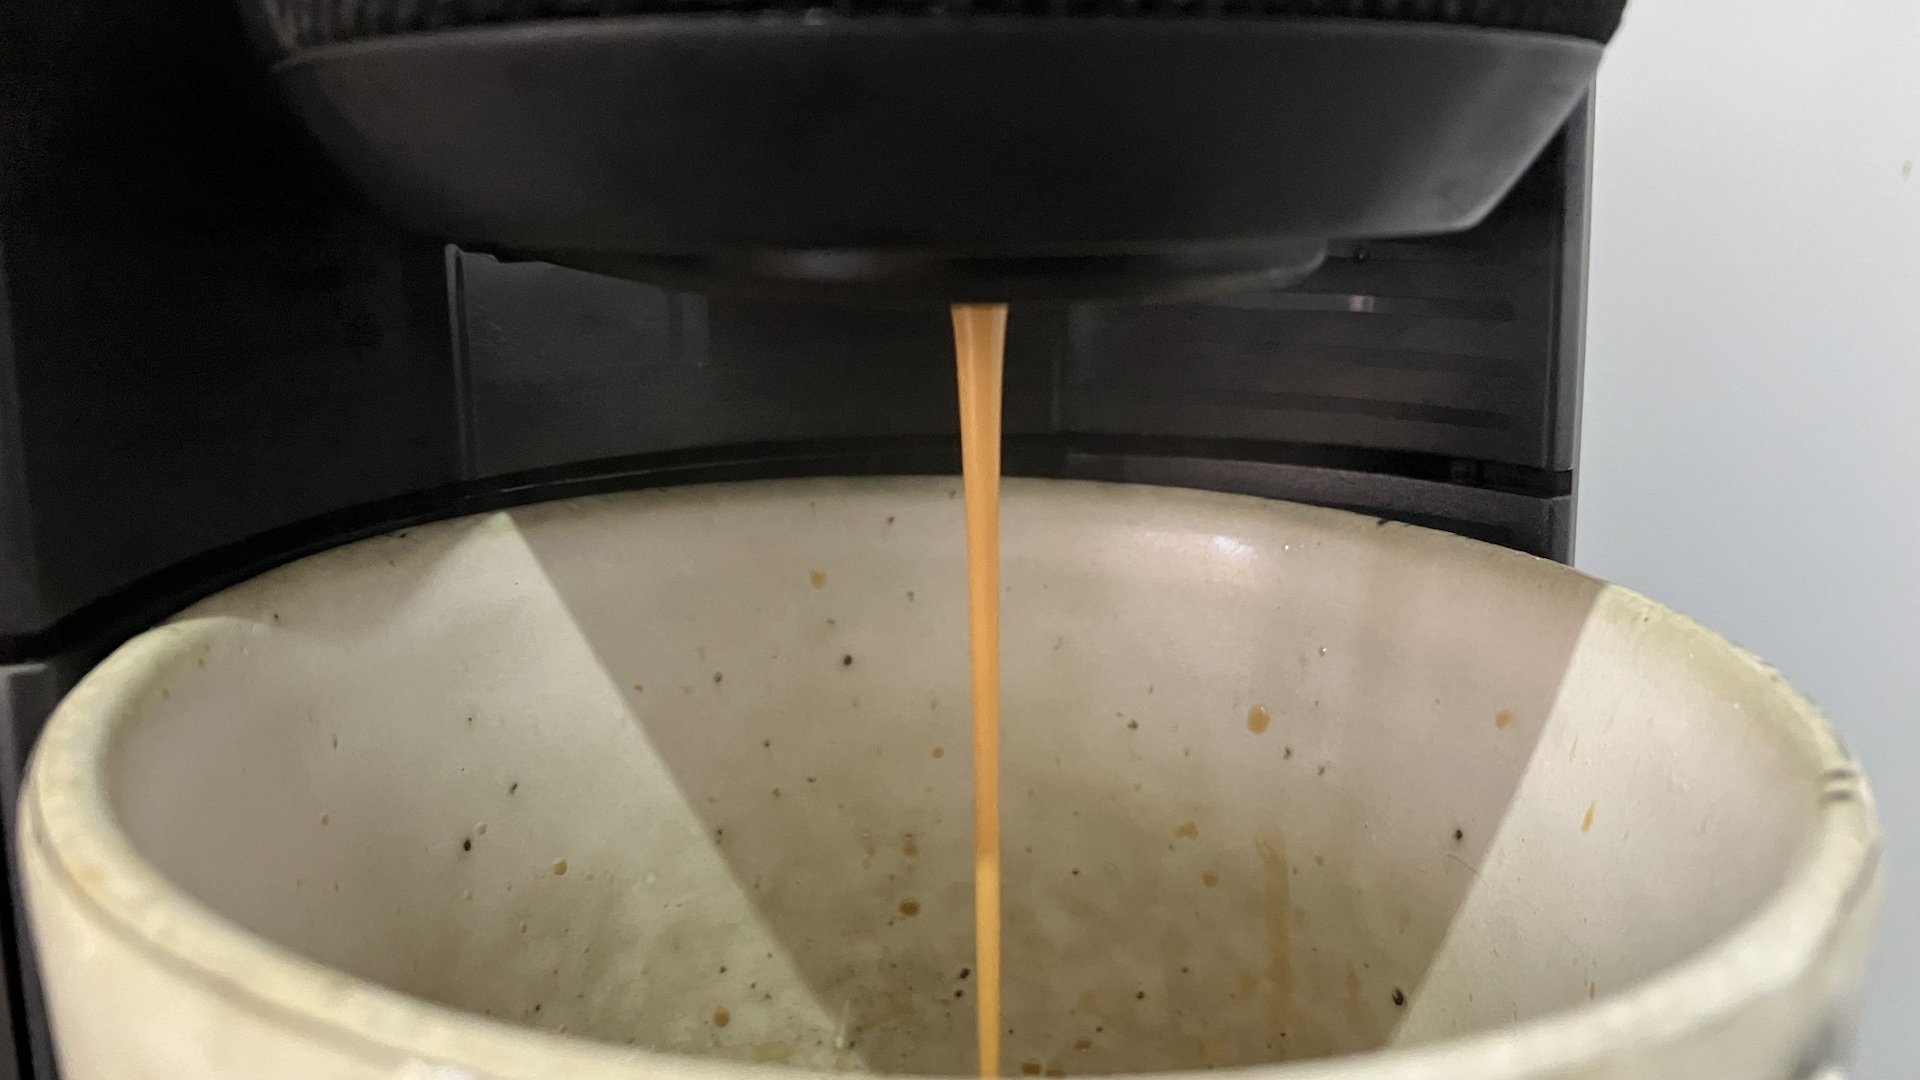 Lavazza A Modo Mio Voicy review: the first espresso machine with Alexa